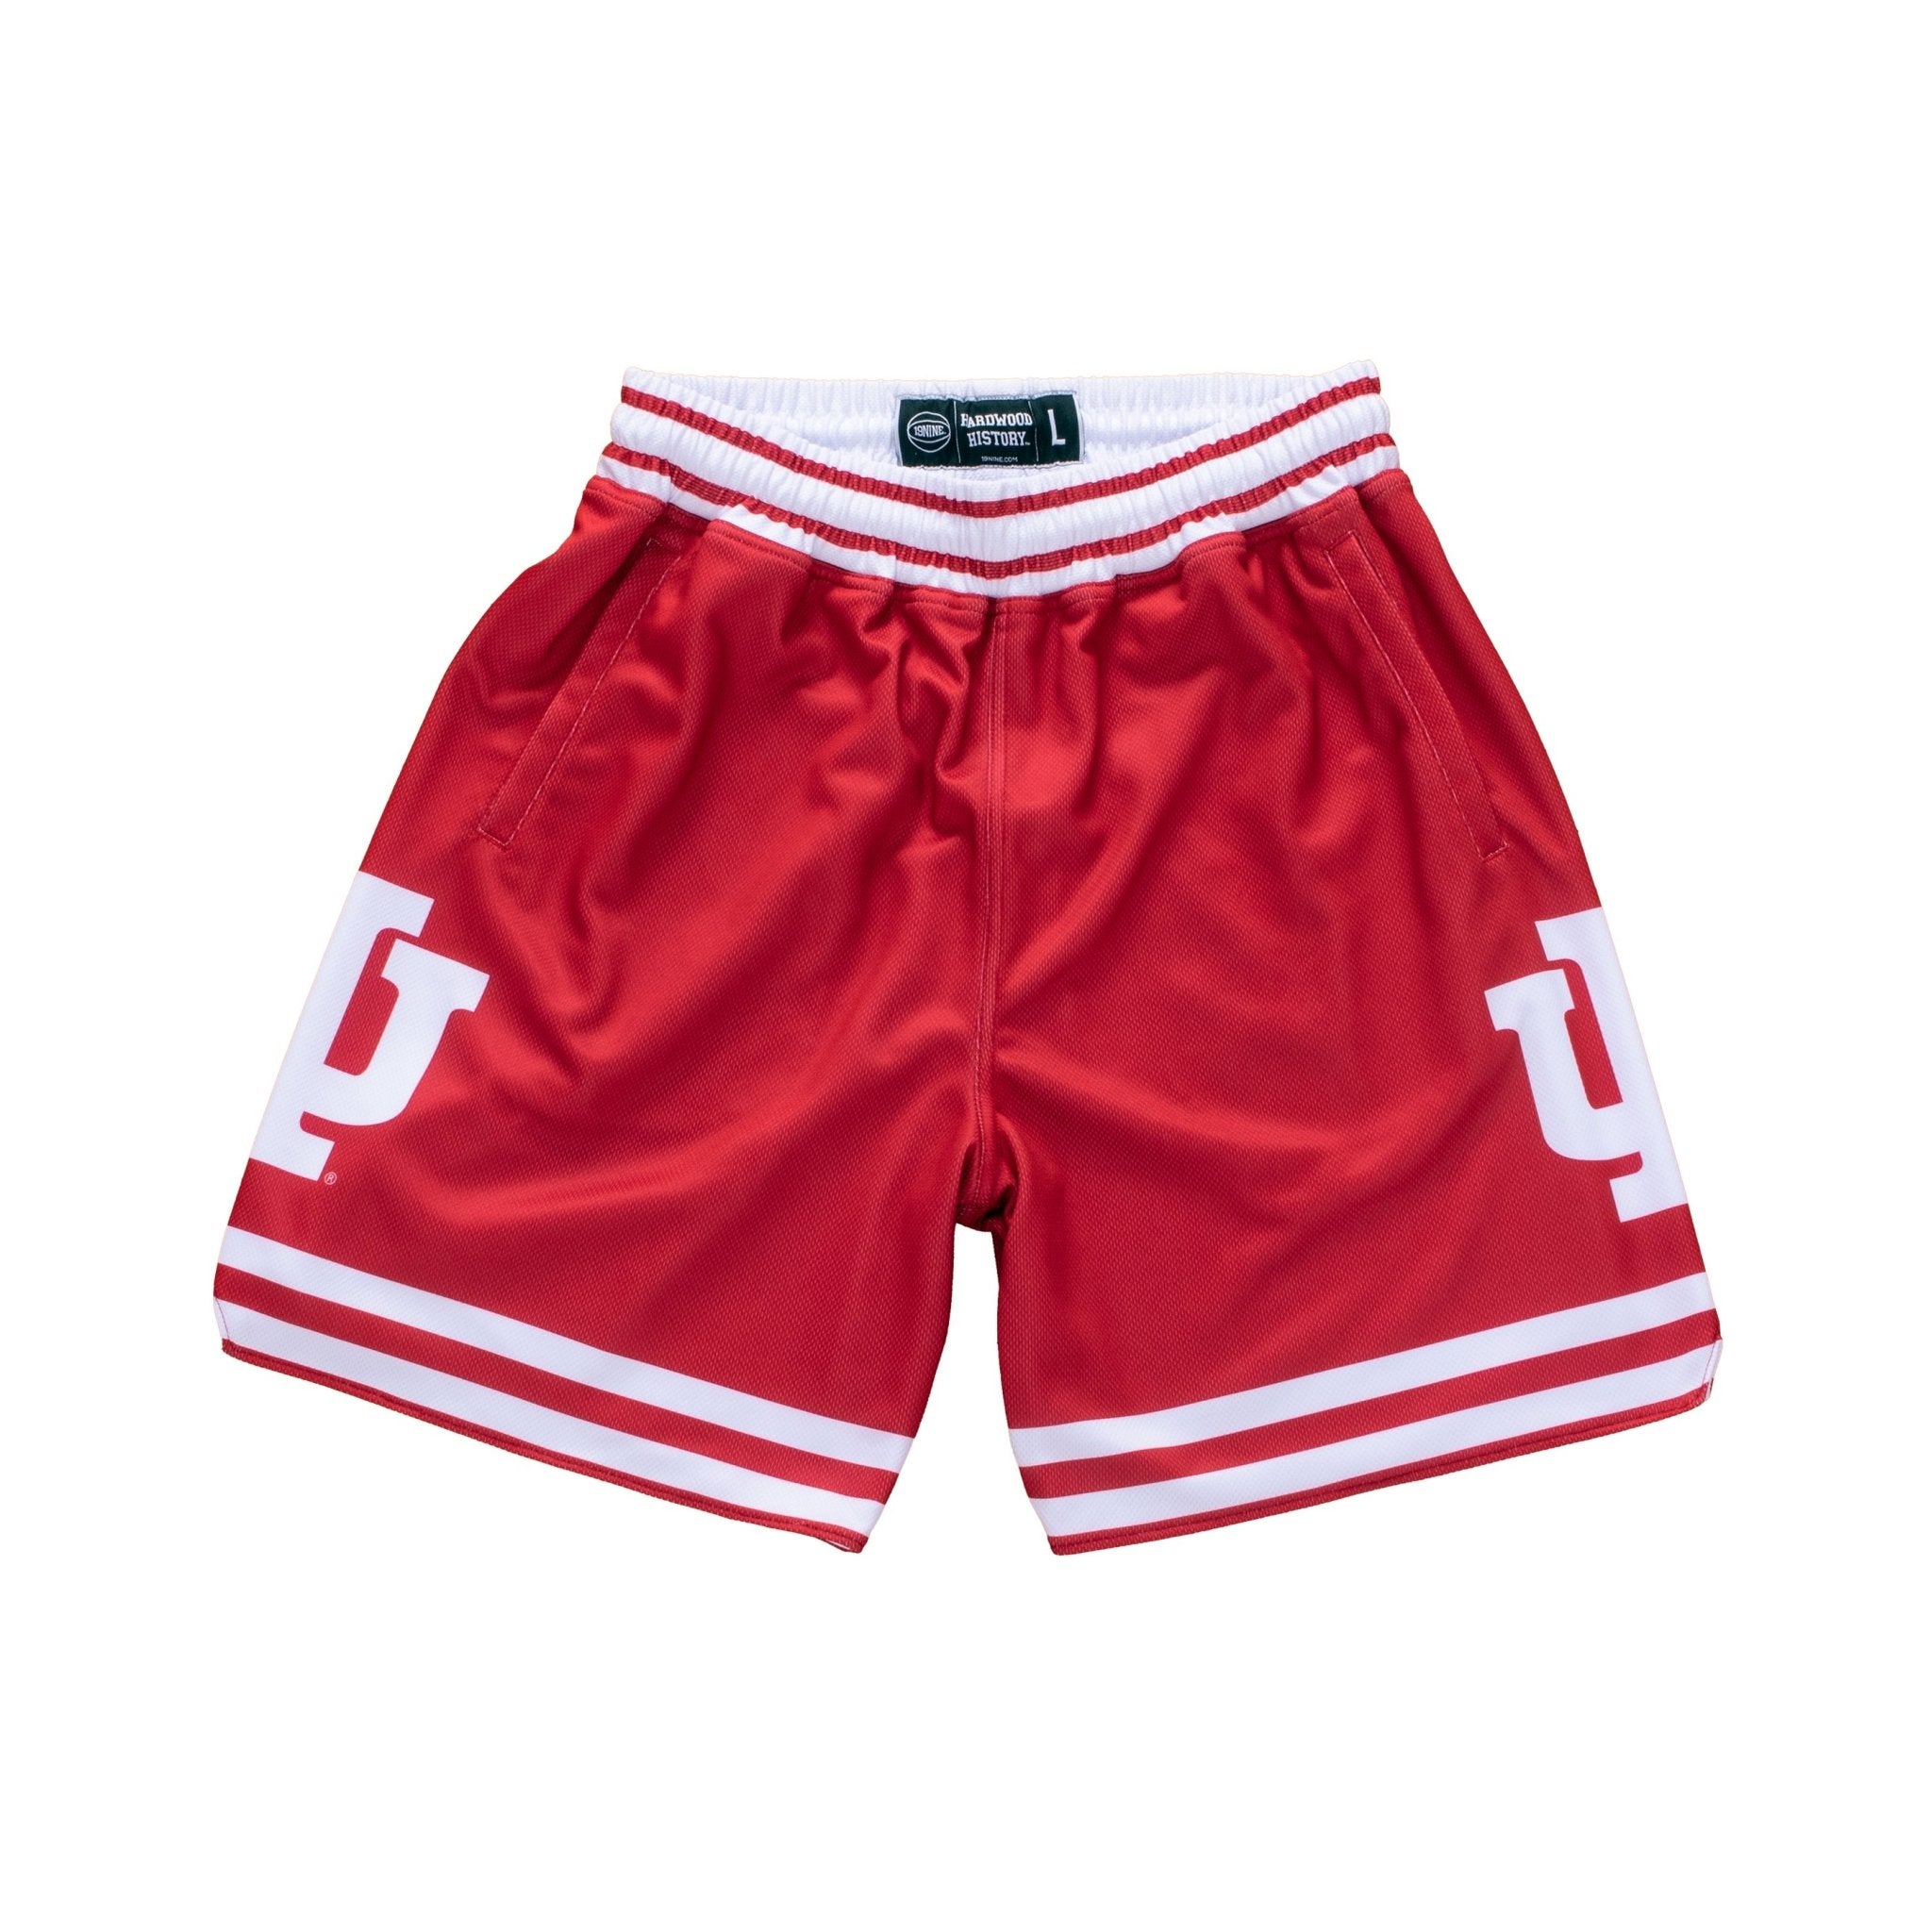 Retro NCAA Shorts – SLAM Goods